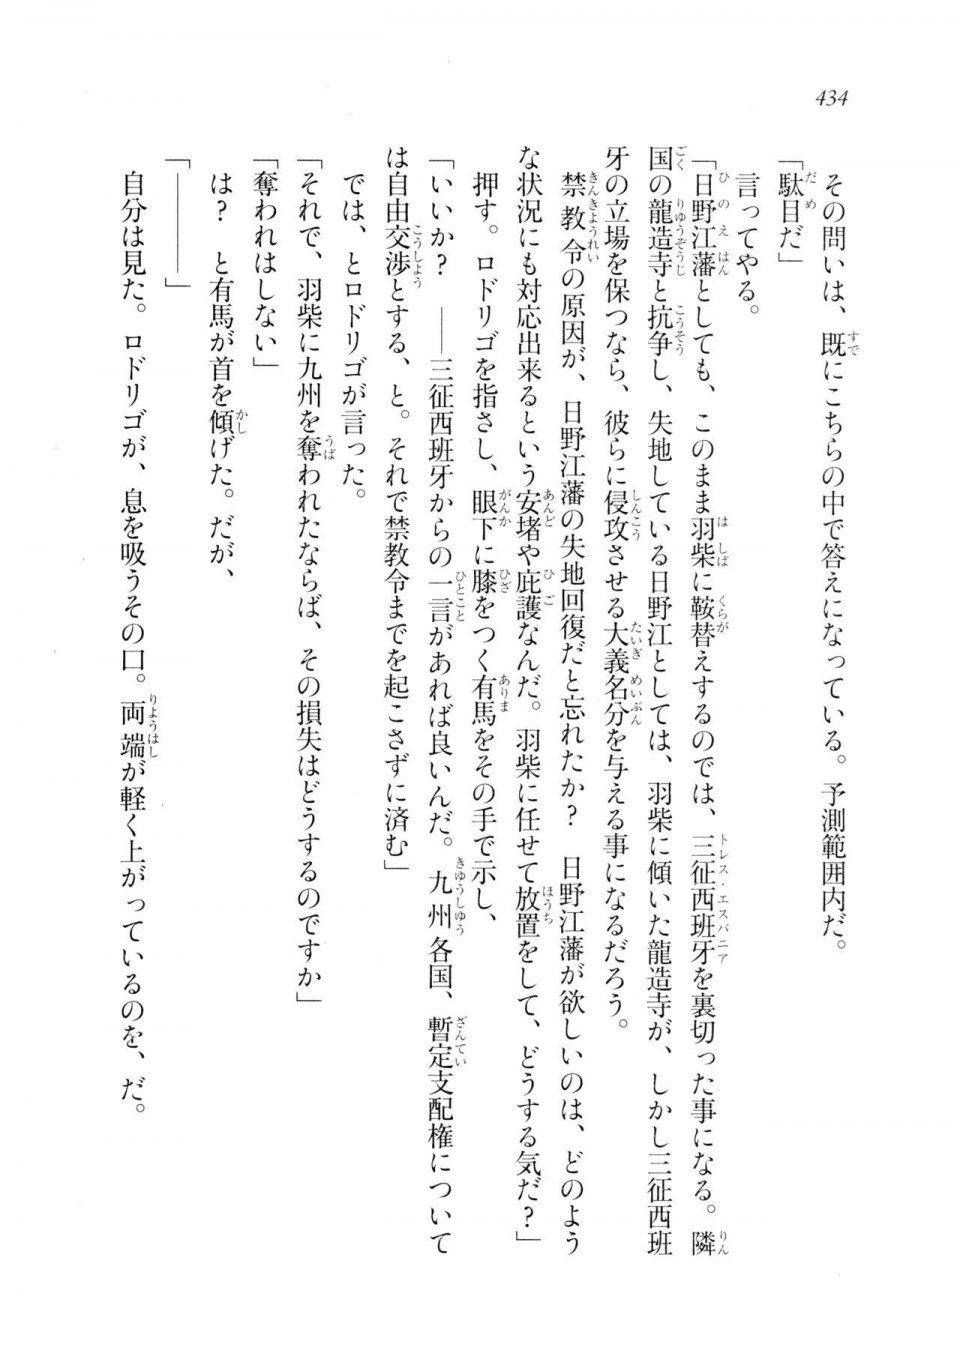 Kyoukai Senjou no Horizon LN Sidestory Vol 2 - Photo #432